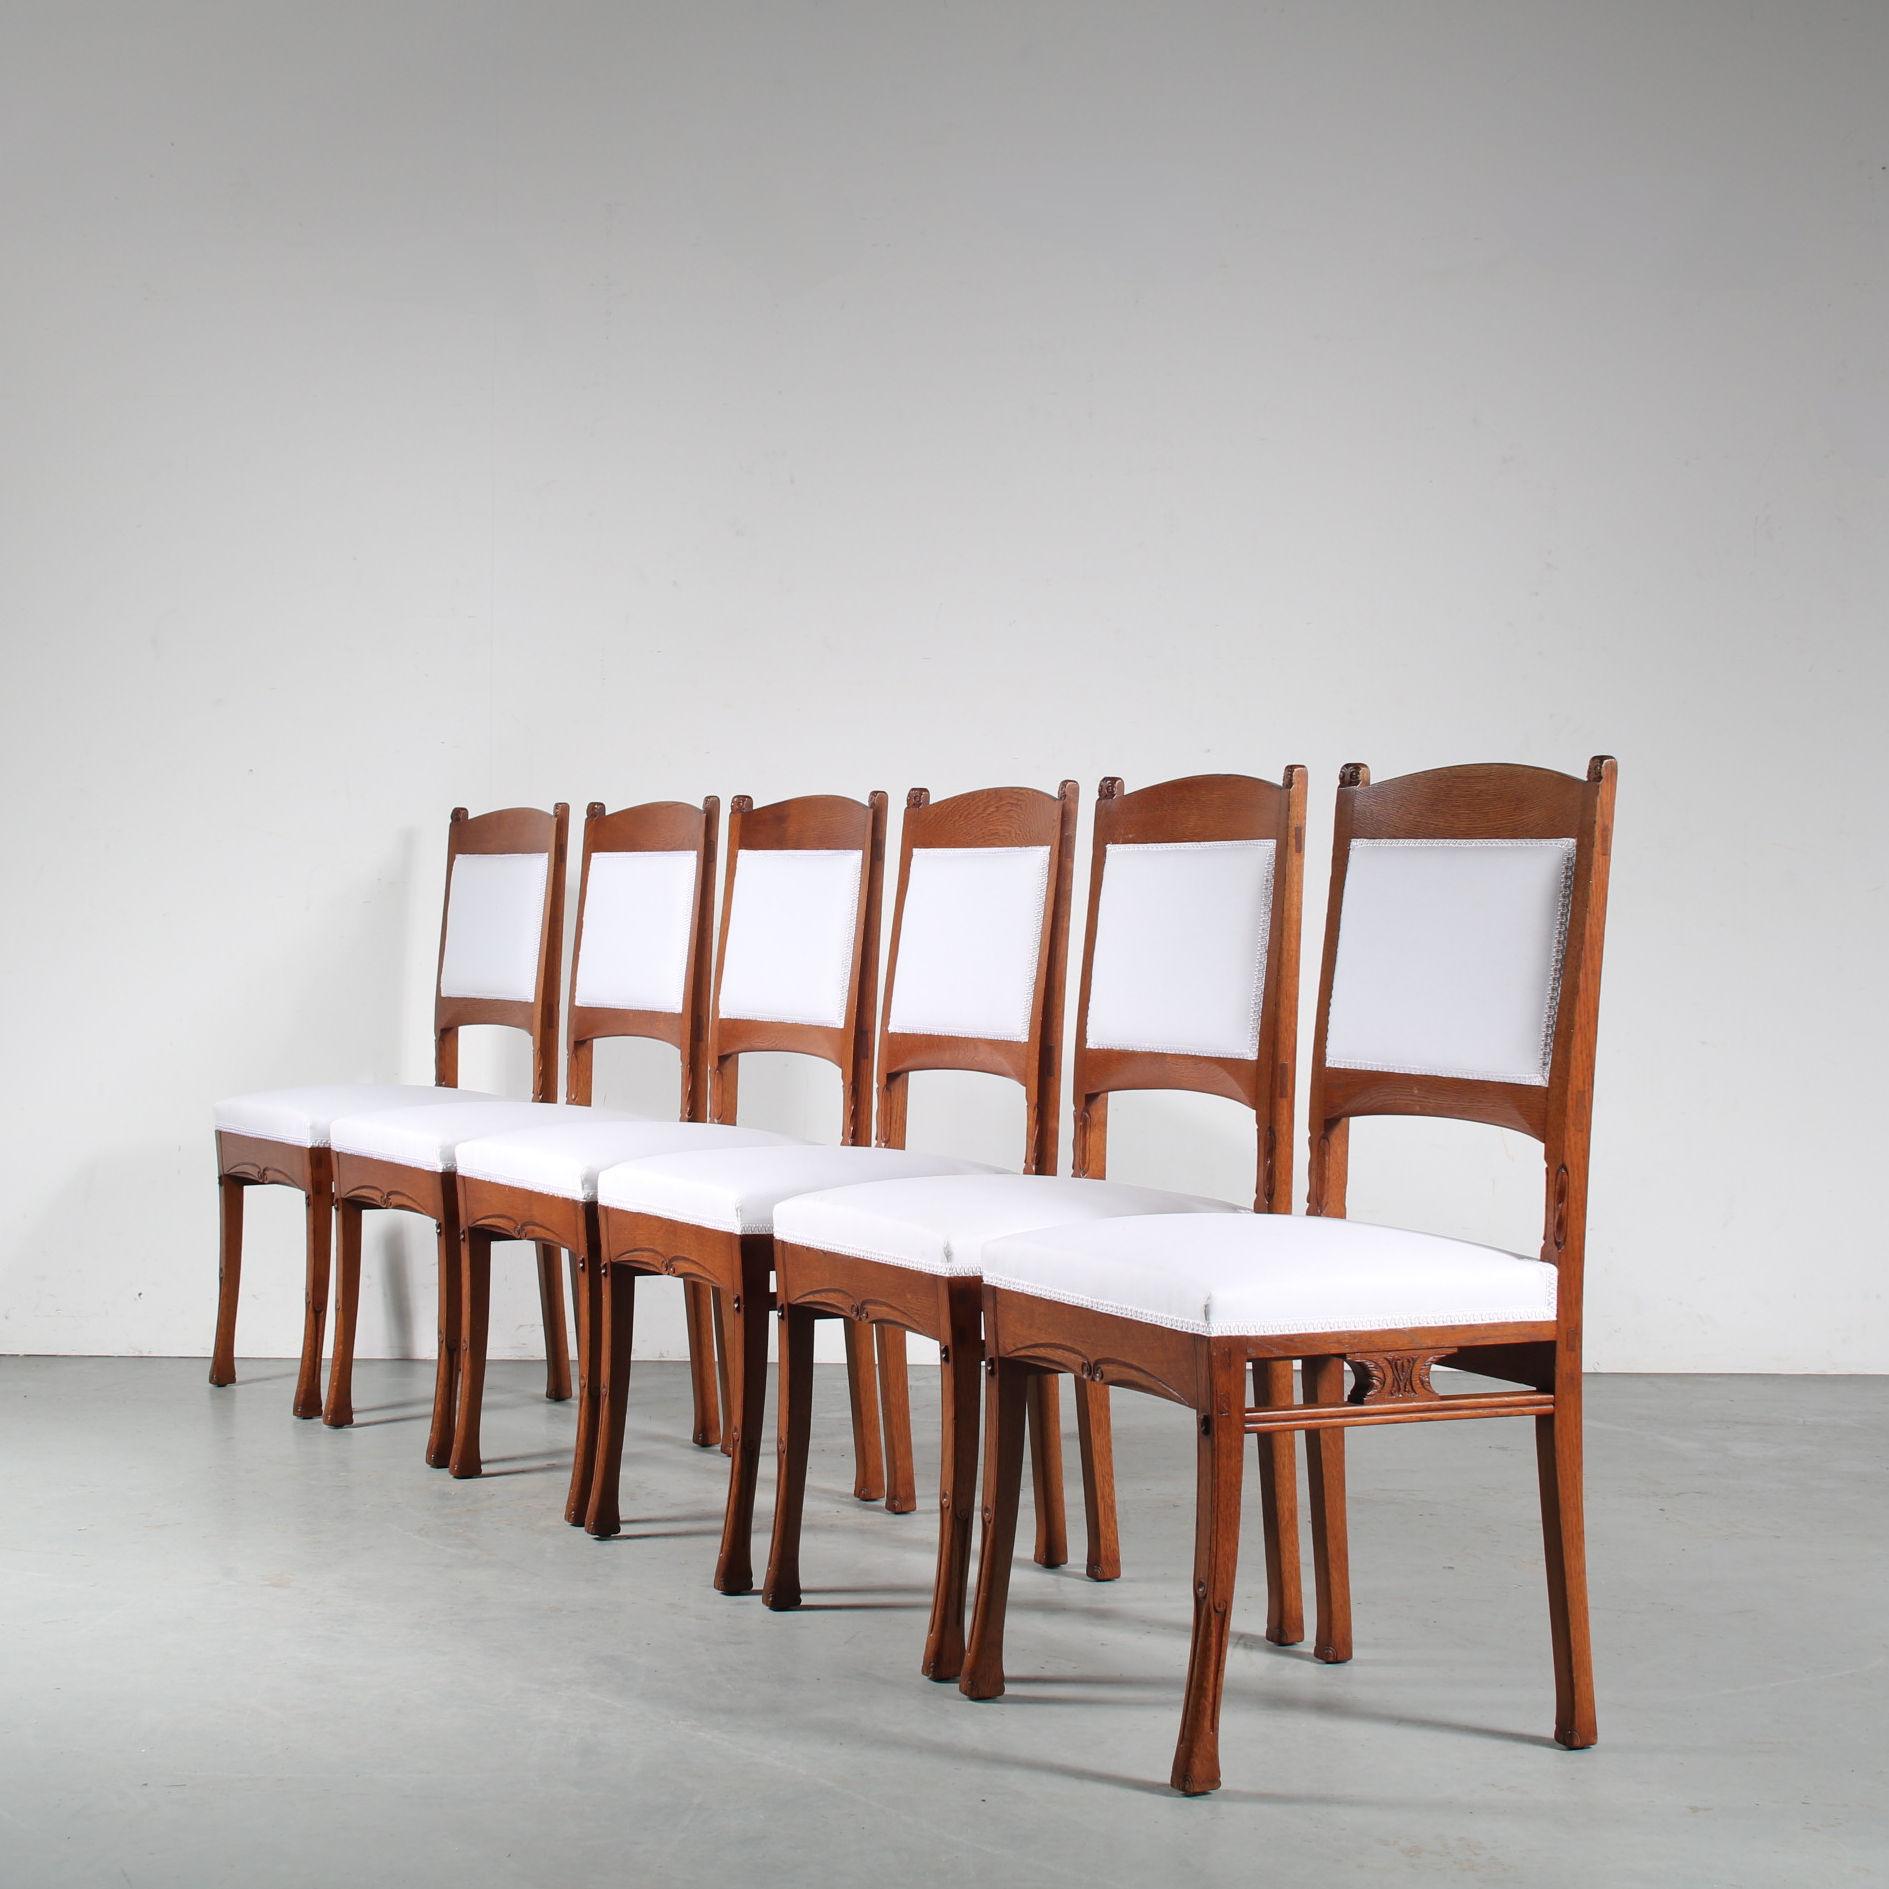 Un bel ensemble de chaises de salle à manger conçu par Gerrit Willem Dijsselhof, fabriqué par Van Wisselingh à Amsterdam, aux Pays-Bas, vers 1900.

Fabriquées en bois de chêne de haute qualité dans une belle couleur brune chaude, ces pièces